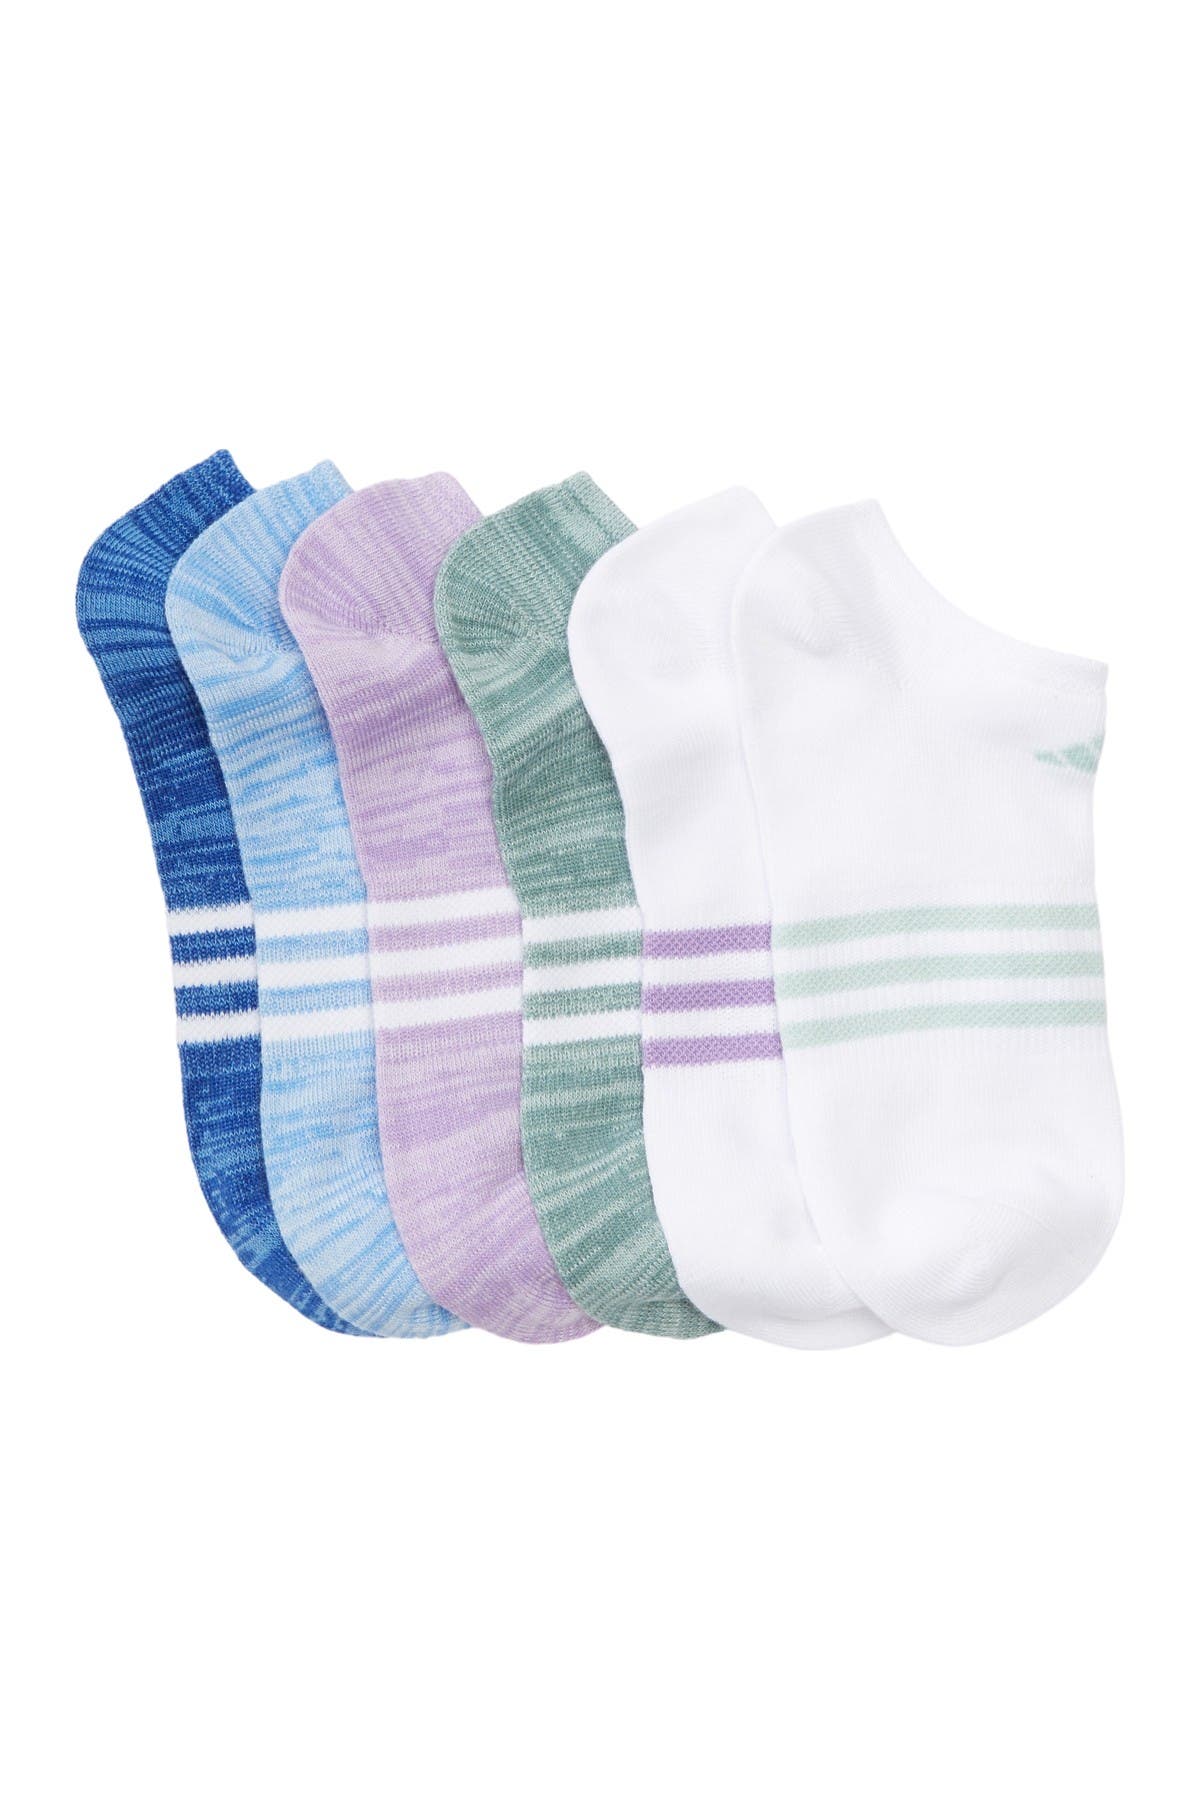 adidas infant socks